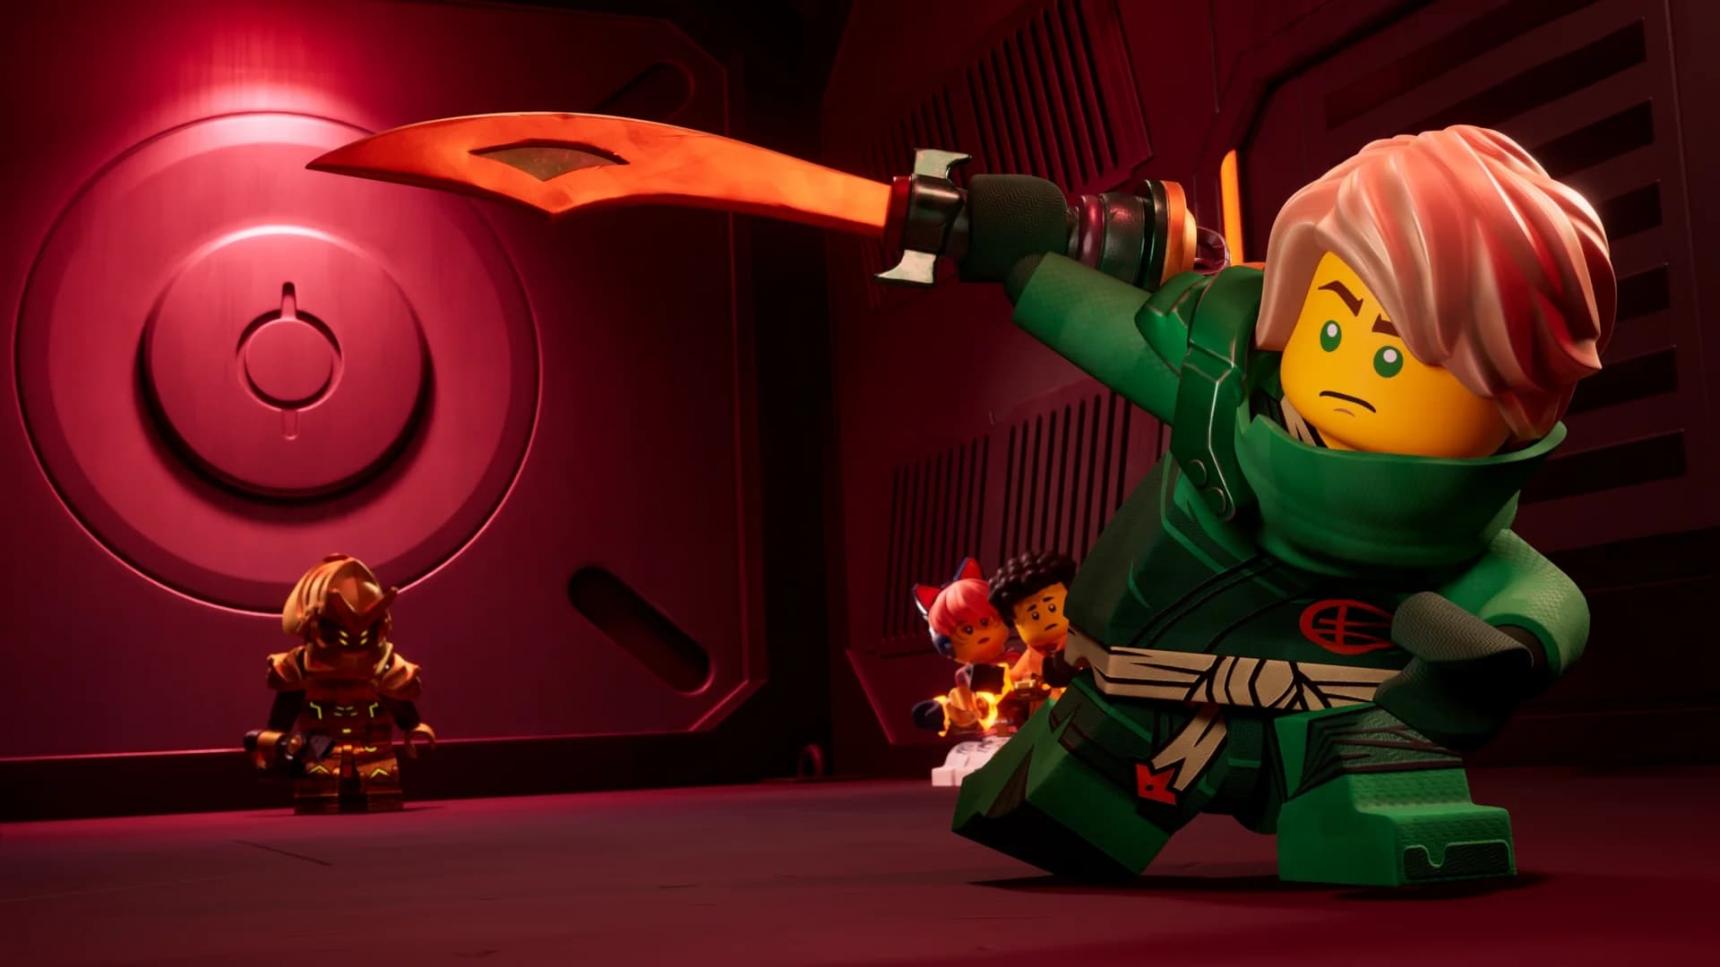 Poster del episodio 2 de LEGO Ninjago: El renacer de los dragones online